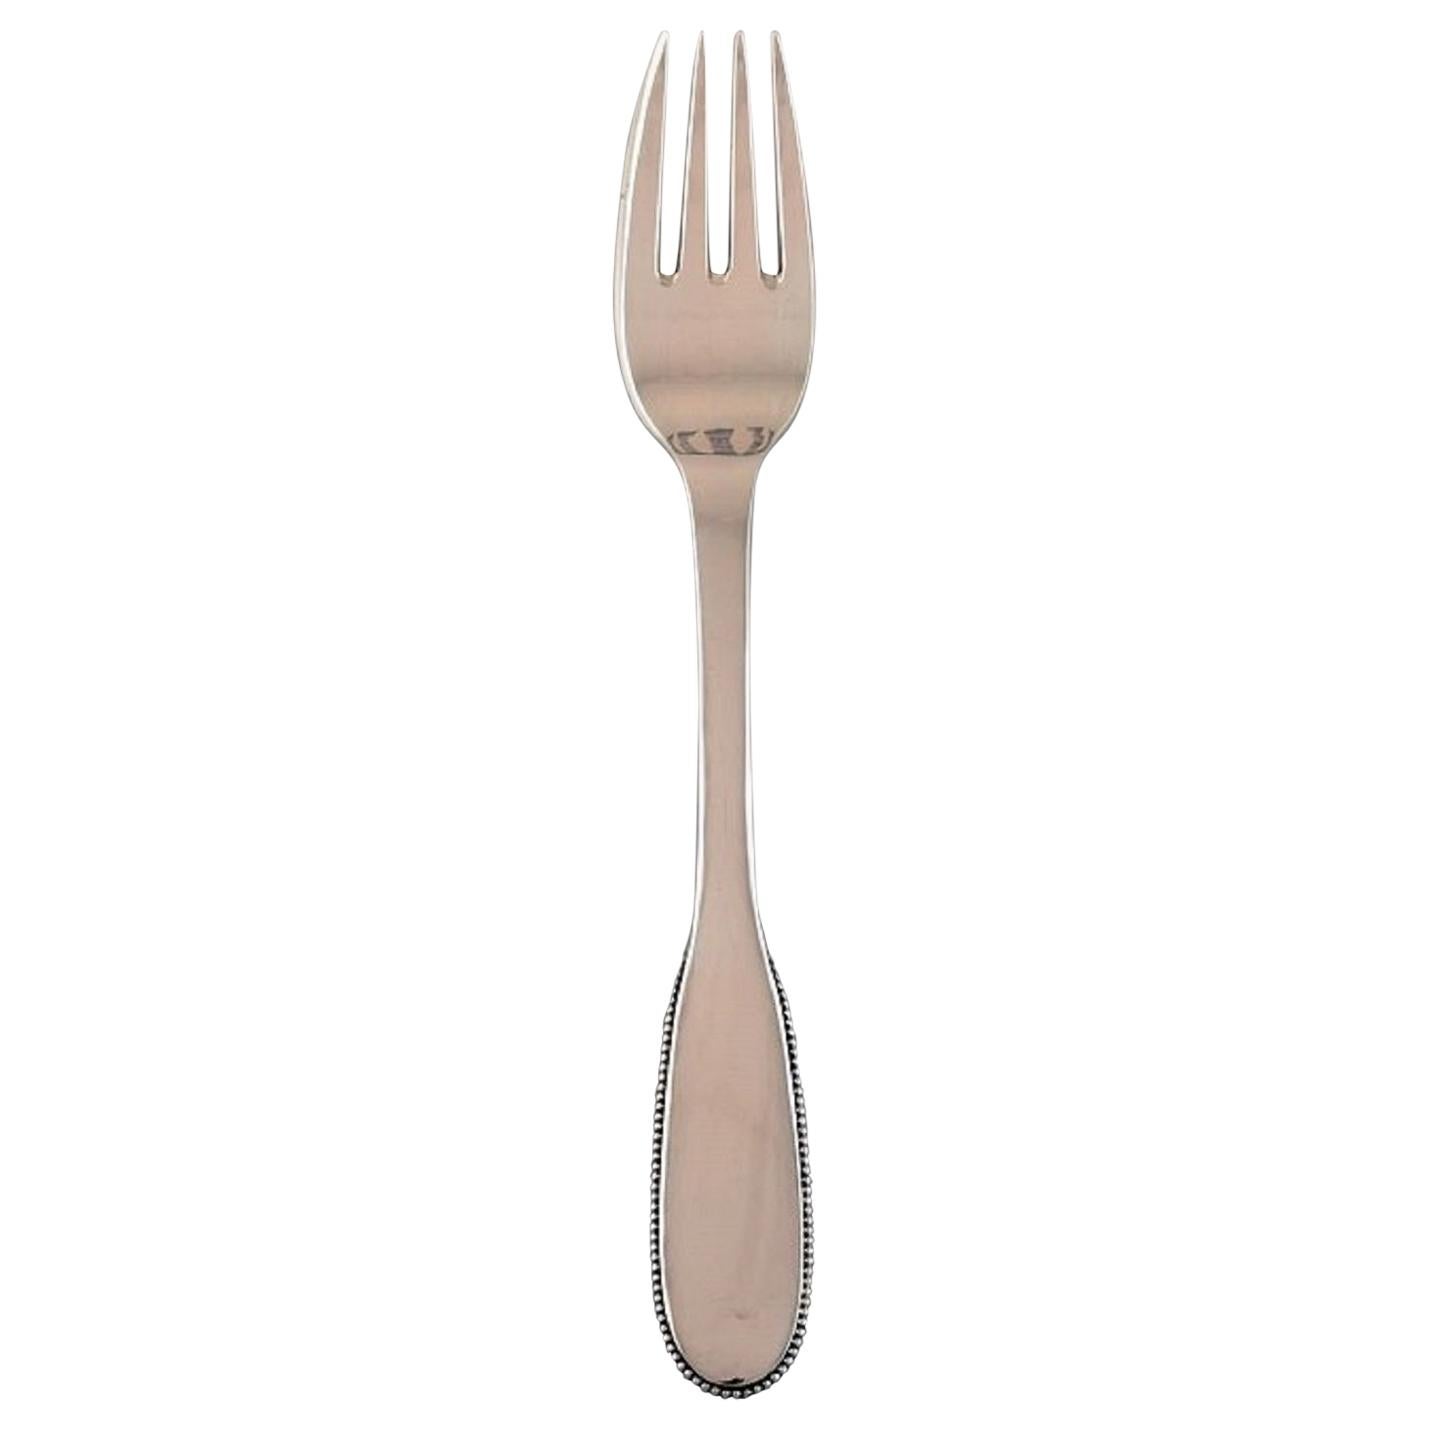 Evald Nielsen Number 14 Lunch Fork in Hammered Silver, 1920s For Sale